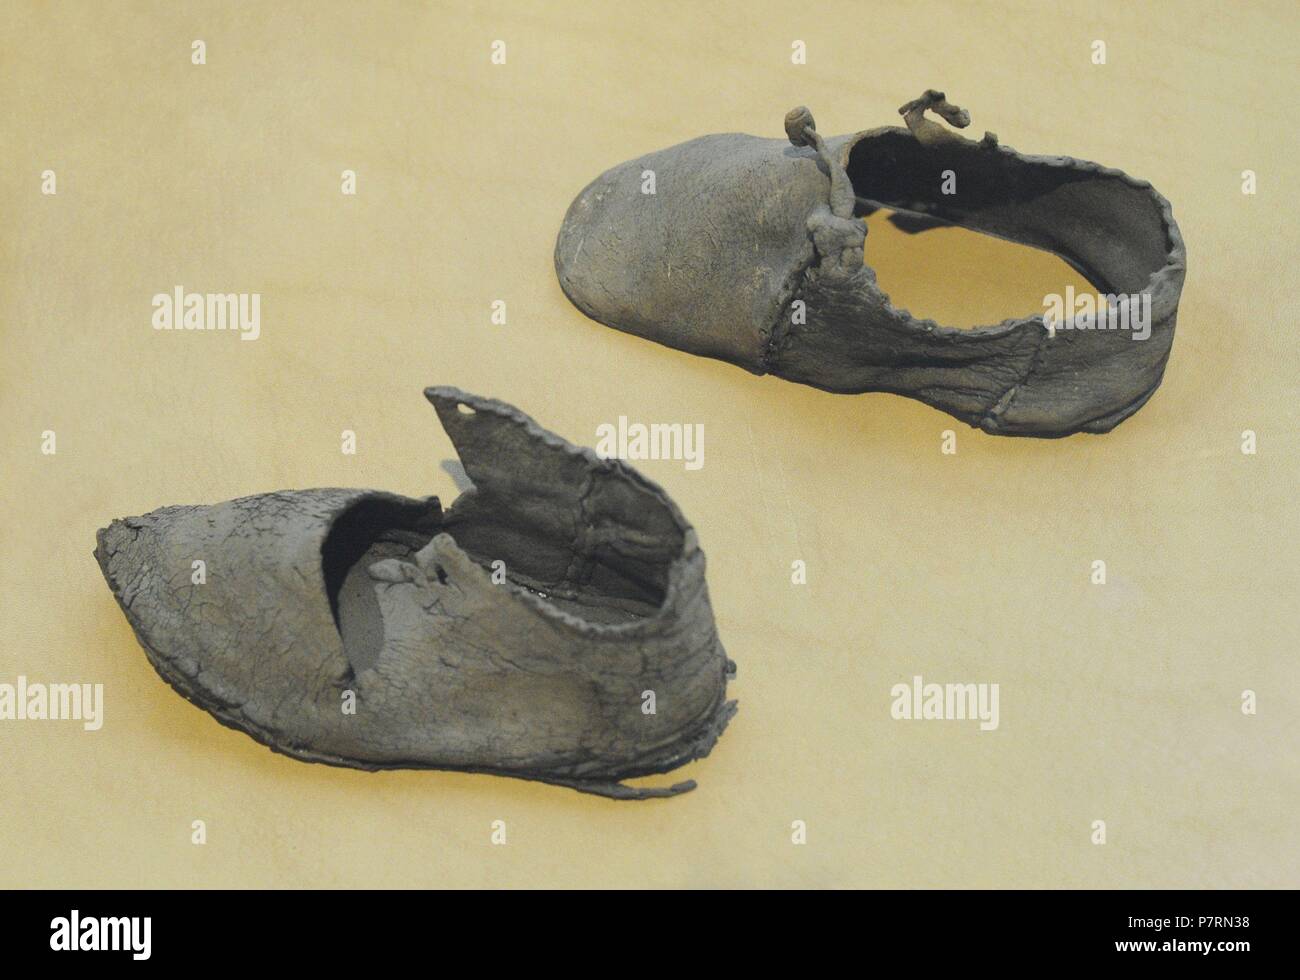 Skandinavische. Mittelalterliche Schuhe für Kinder. Rindsleder. 13.  Jahrhundert. Historisches Museum. Oslo. Norwegen Stockfotografie - Alamy